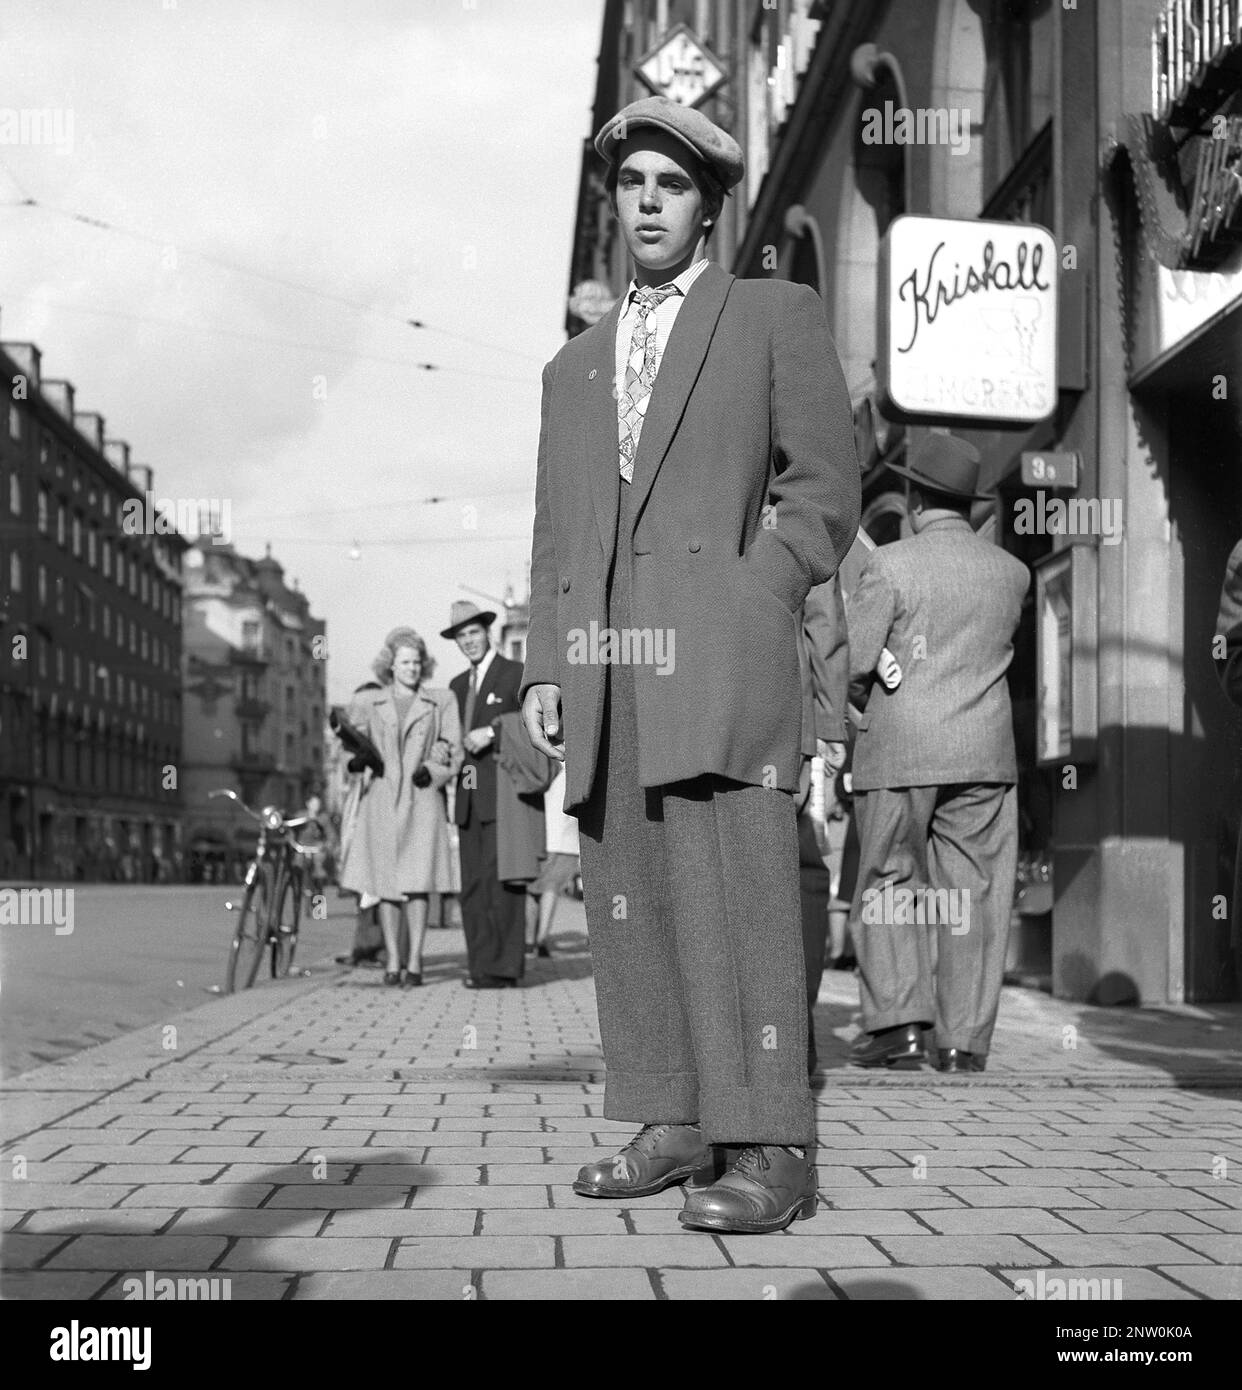 1940s mode. Un jeune homme portant un costume Zoot typique, un costume pour homme avec un pantalon à taille haute et à larges jambes et un long manteau avec des revers larges et des épaules rembourrées larges. Le procès de zoot a été controversé en 1940s. Le mot Zoot vient probablement d'une duplication de suit. Le dos de la combinaison de zoot est vu sur picutre KG271200. Suède 1944 Kristoffersson Réf. K60-2 Banque D'Images